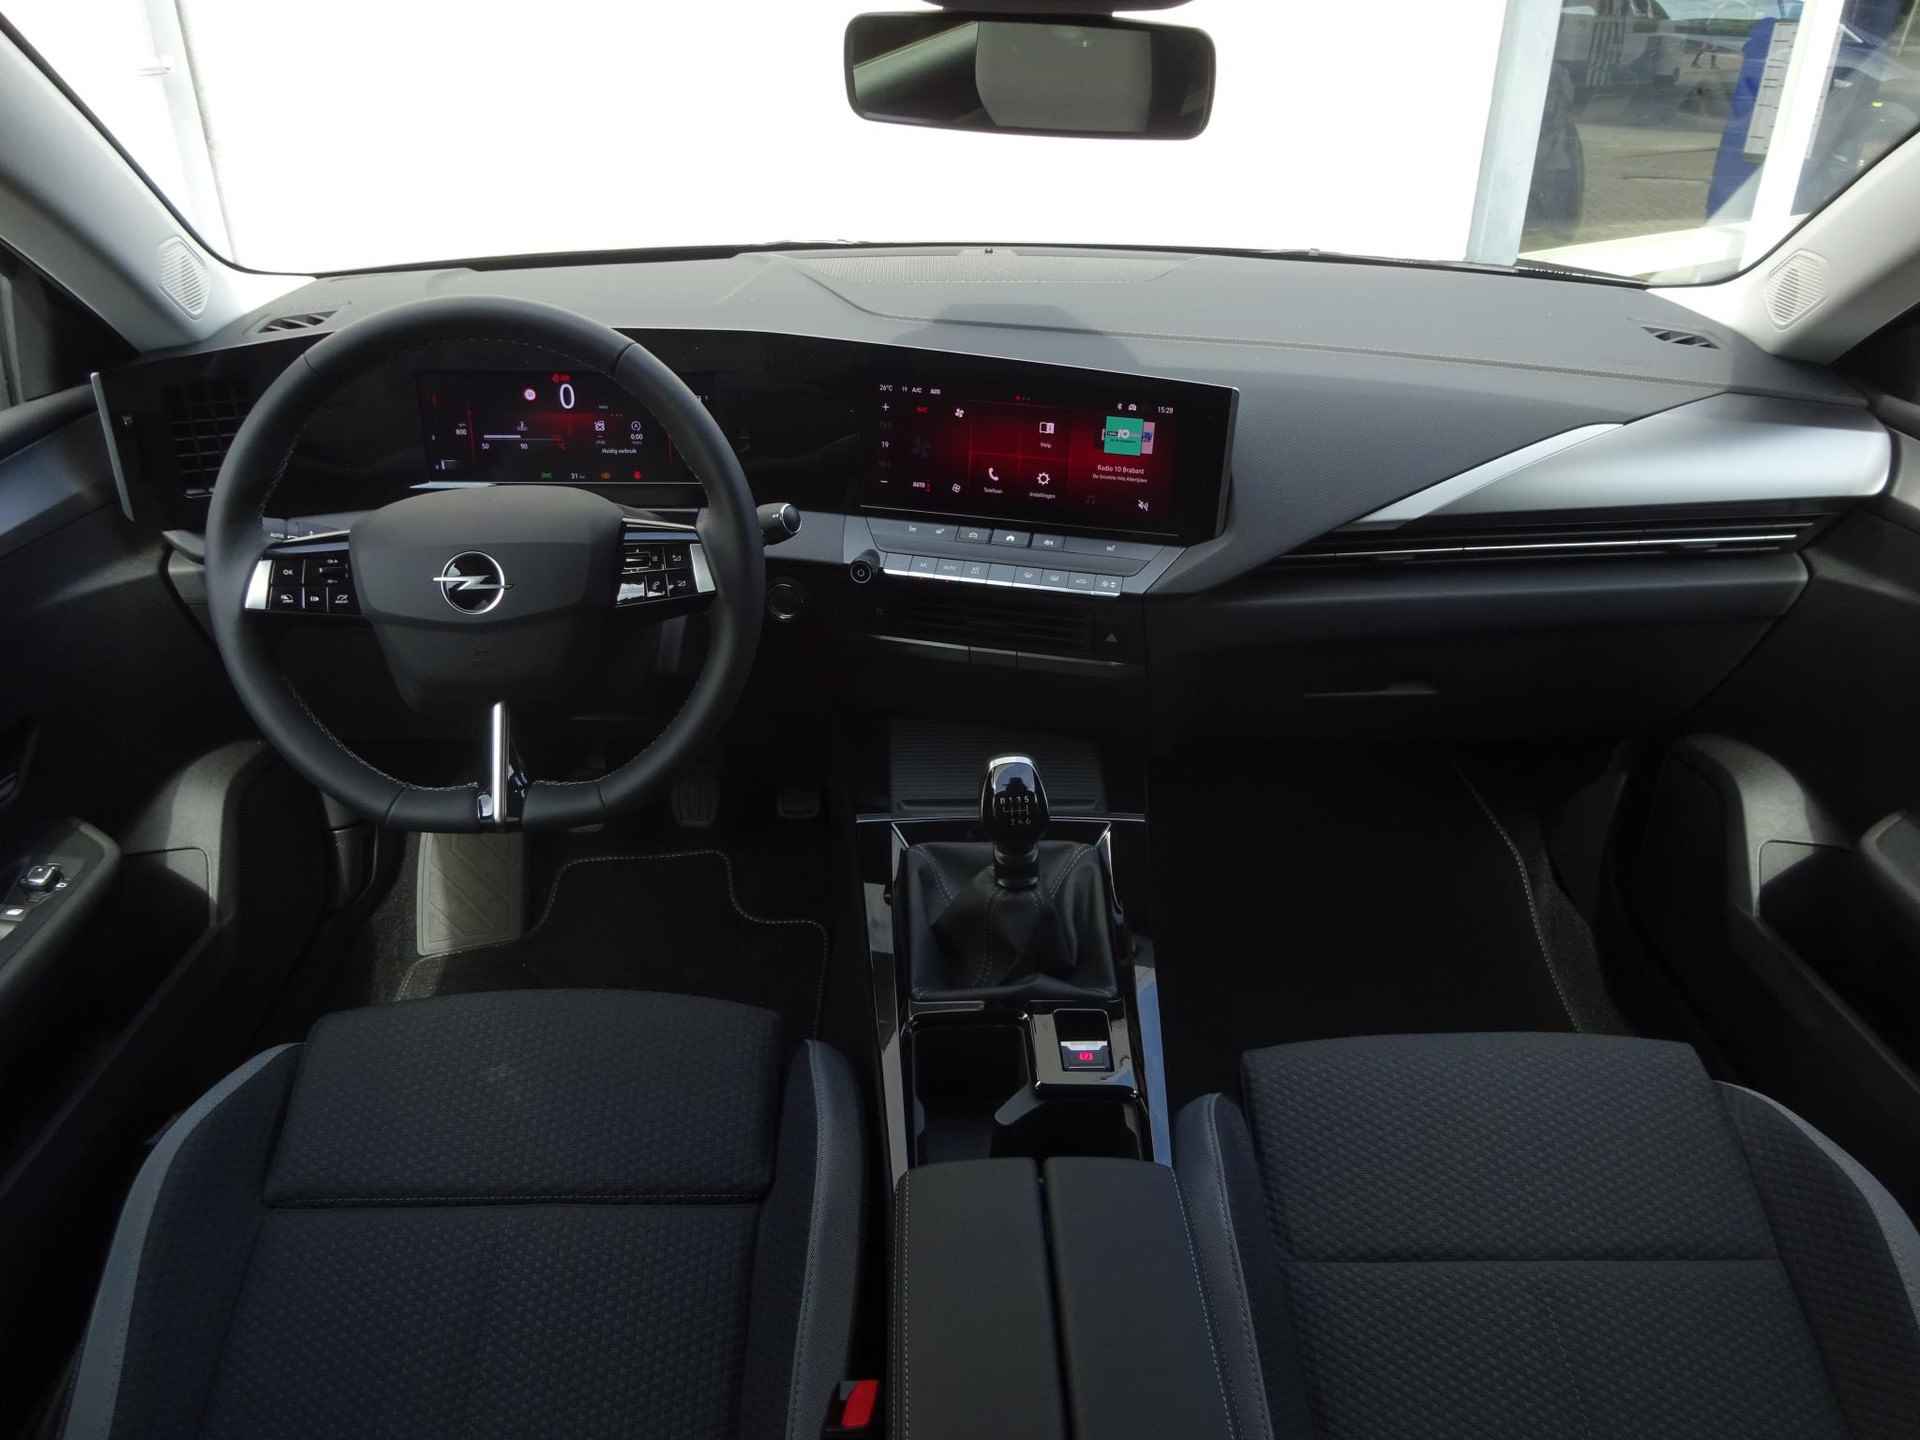 Opel Astra 1.2 Turbo 130pk 6 versnellingen Business Edition | AGR STOELEN | RESERVEWIEL VOORBEREIDING | TREKHAAK | PER 25-11 BESCHIKBAAR | - 15/44